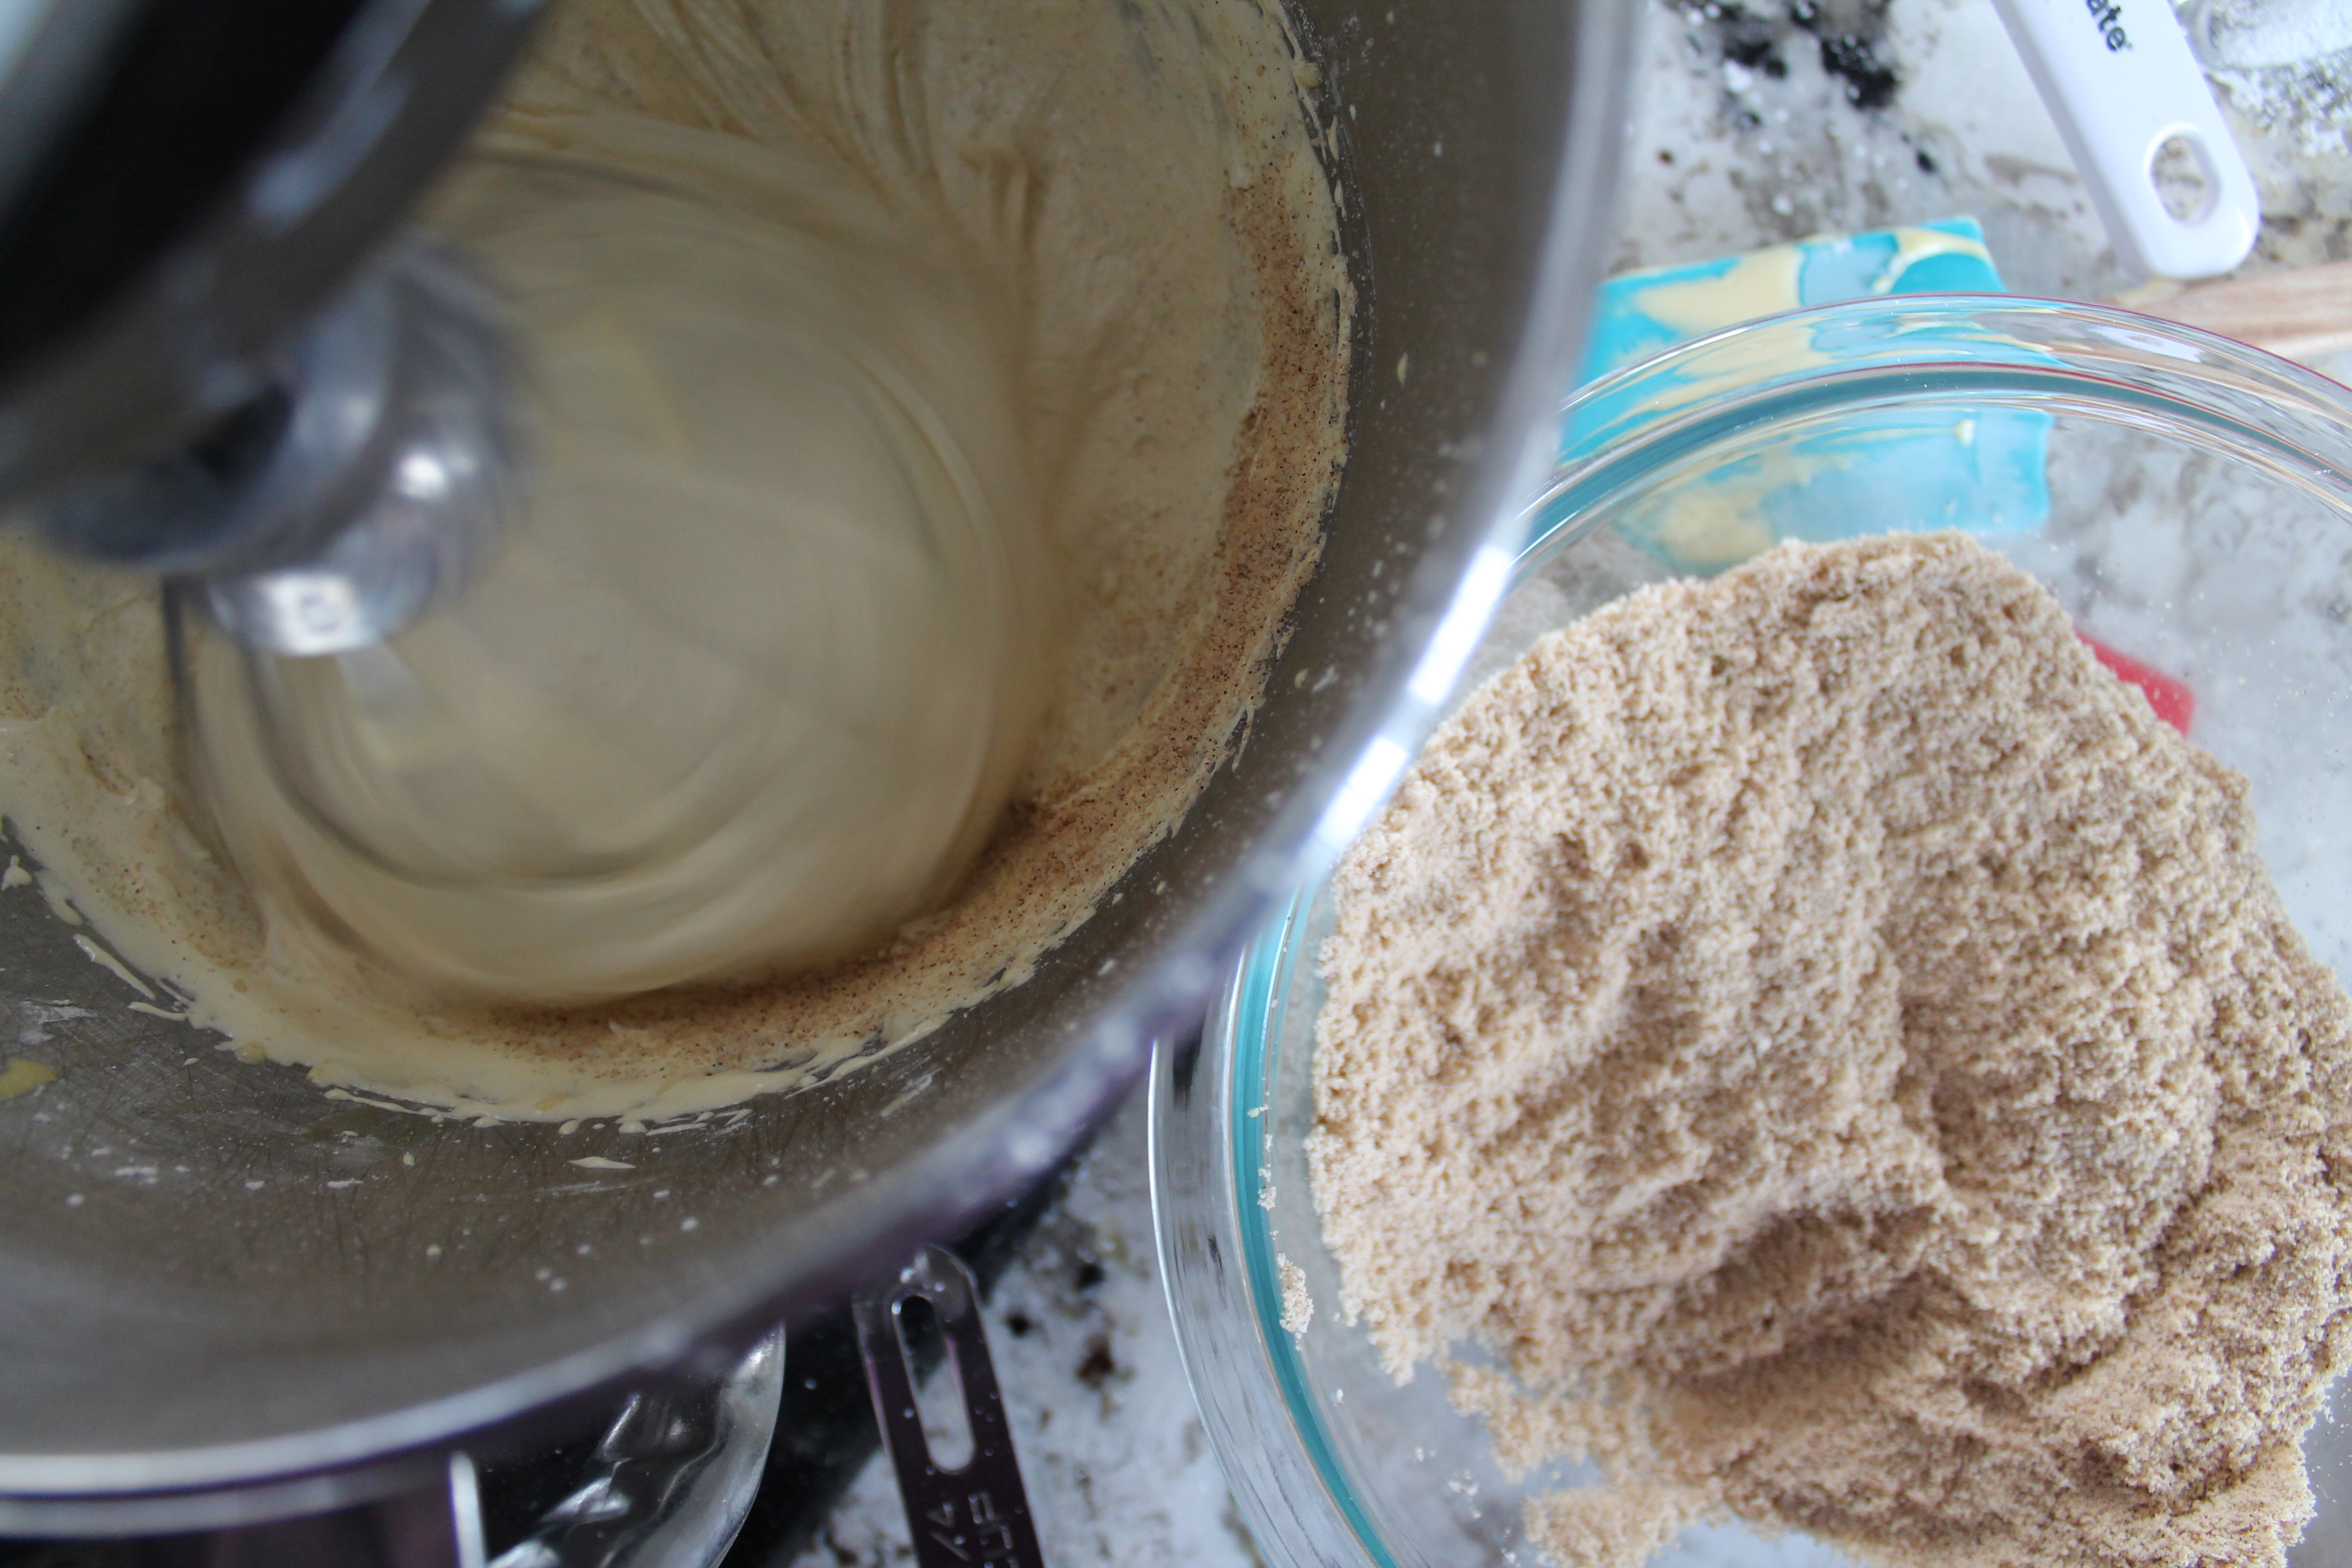 Adding "Flour"